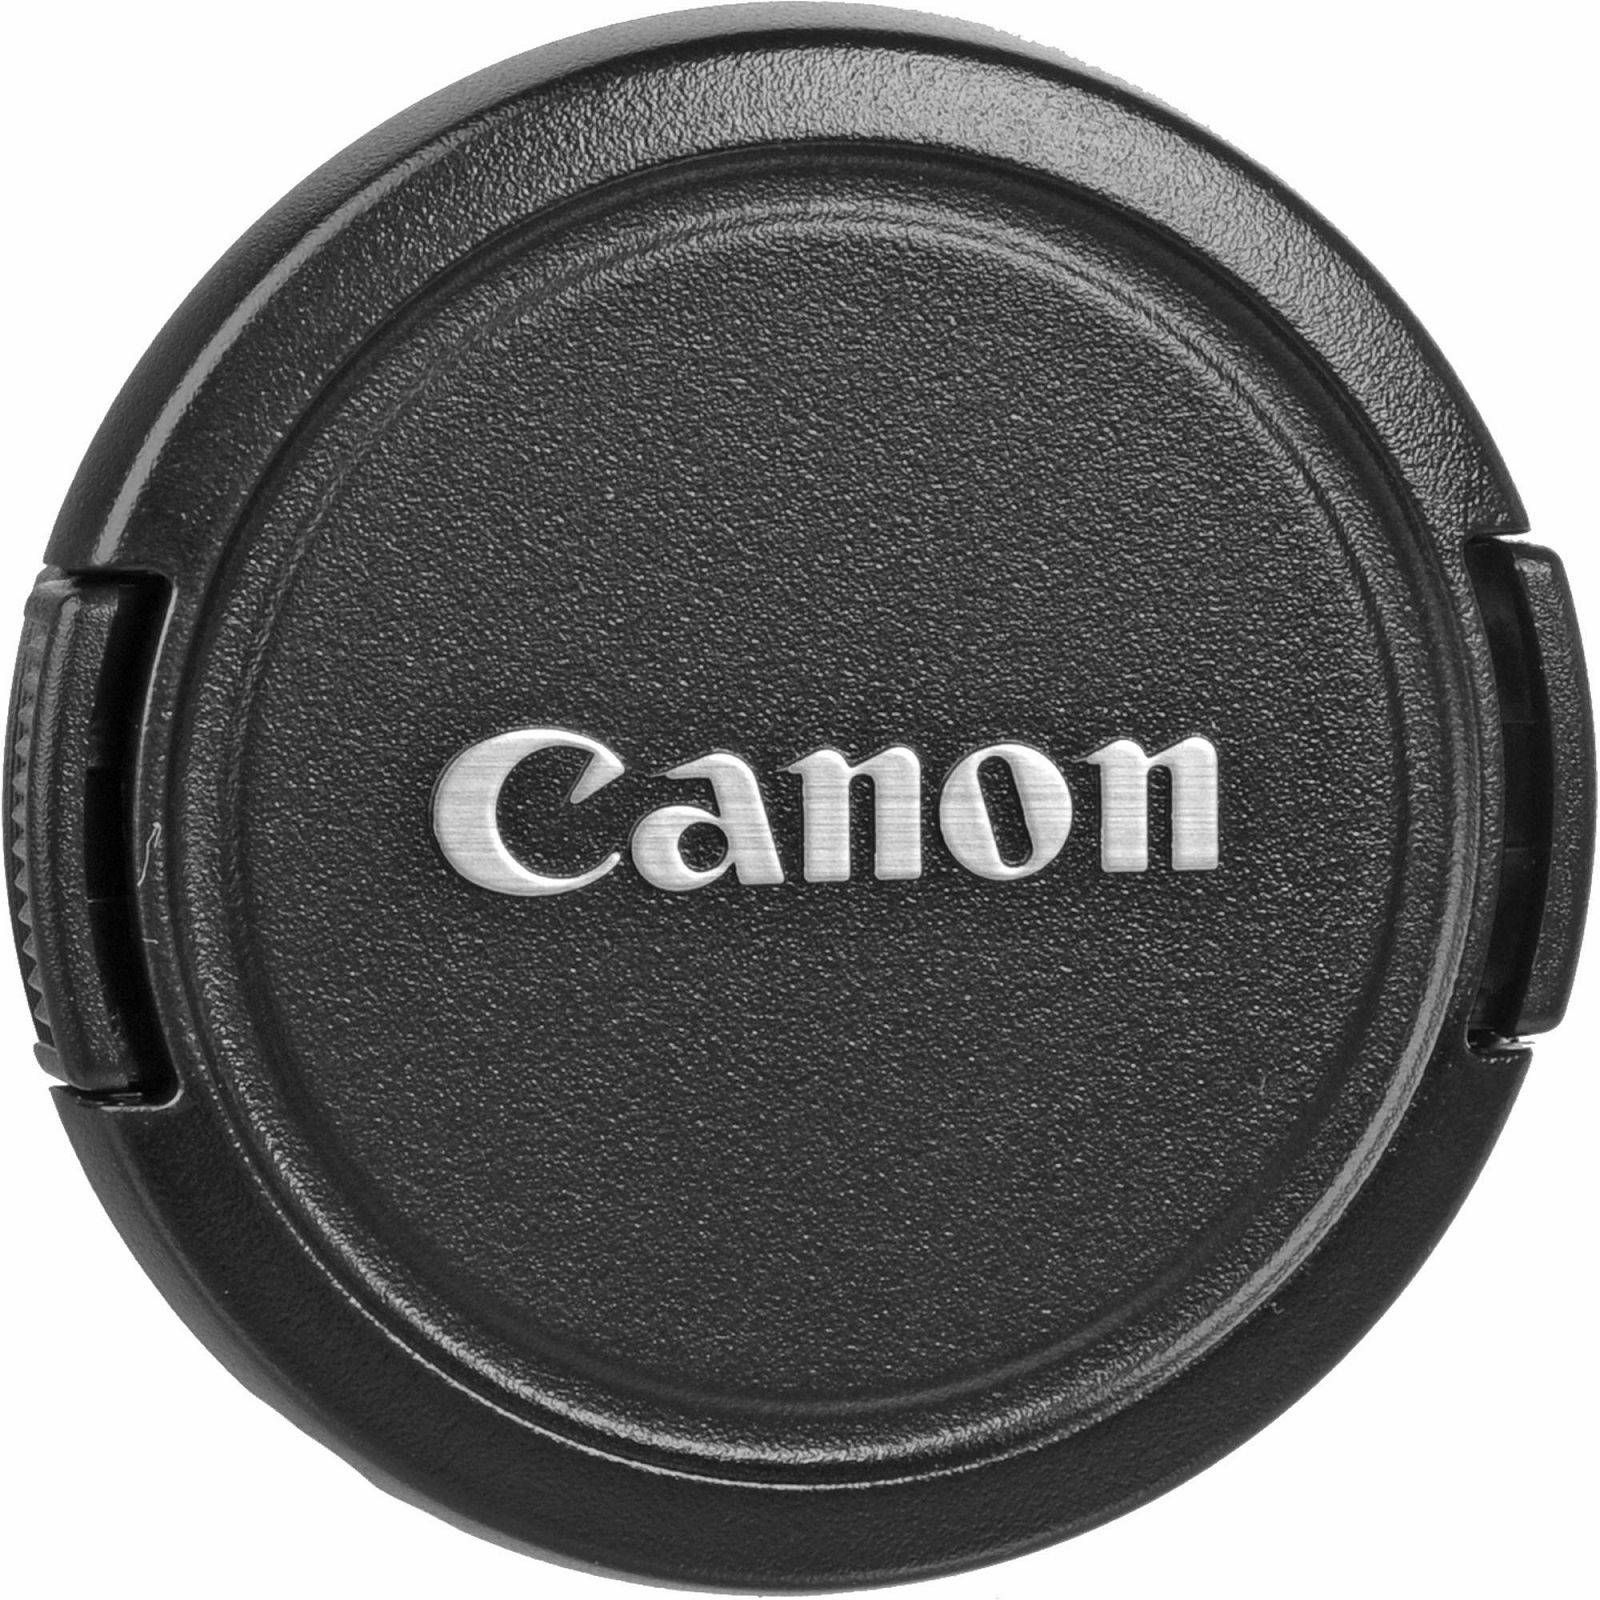 Canon EOS 2000D + 18-55 IS II + 75-300 KIT Black DSLR Digitalni fotoaparat s objektivima EF-S 18-55mm f/3.5-5.6 EF 75-300mm f/4-5.6 III (2728C031AA) - CASH BACK